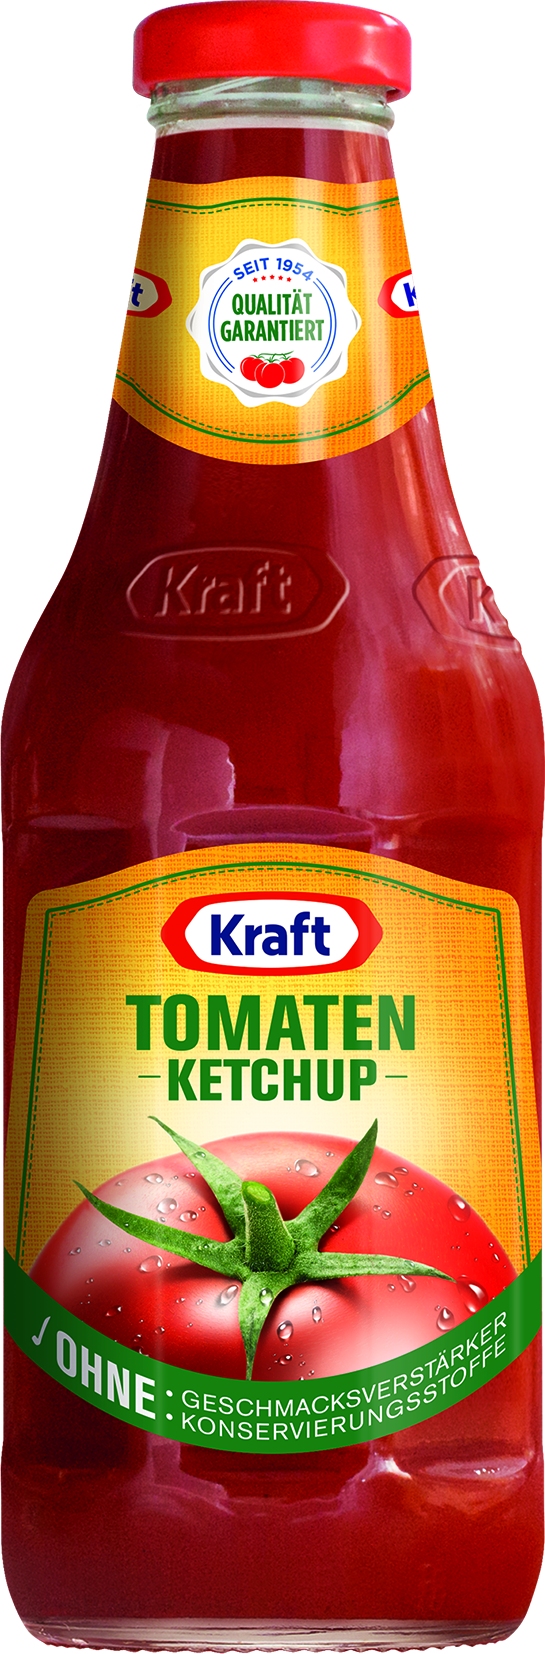 Tomaten Ketchup   